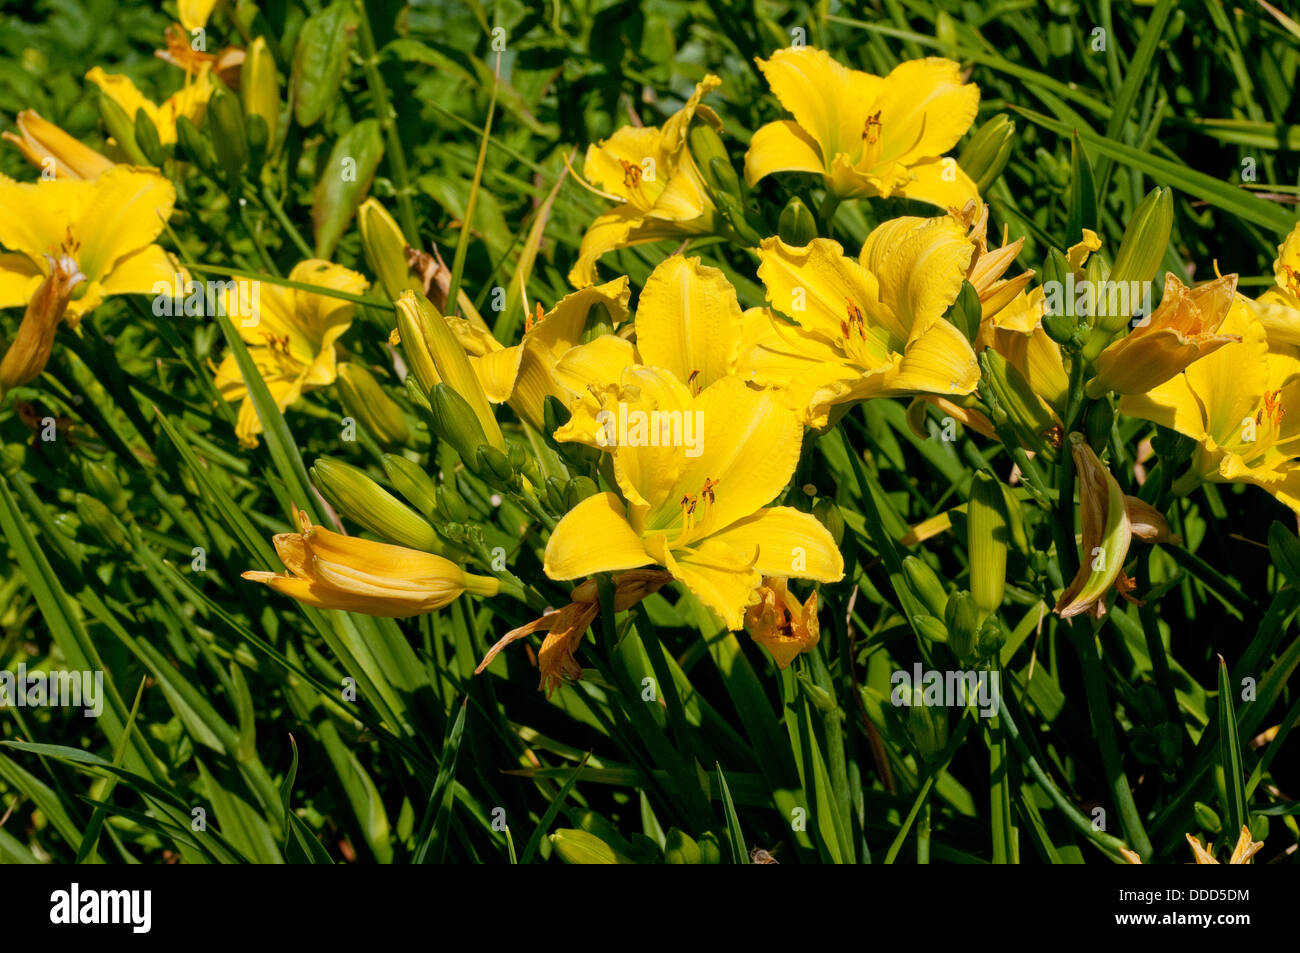 Hemerocallis 'Green Flutter' flowers Stock Photo